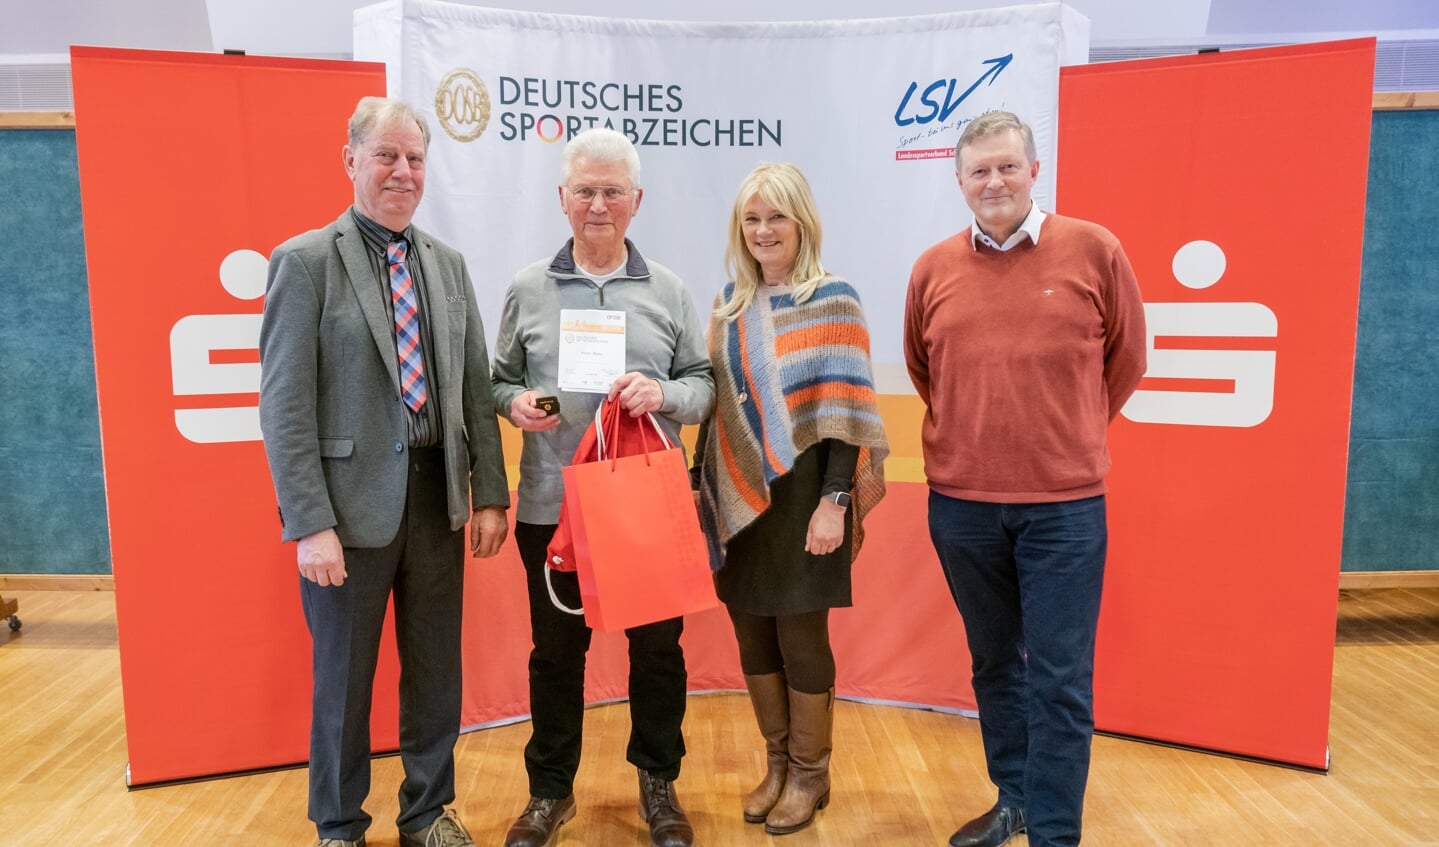 Jens Hartwig (LSV), Peter Mahn, Flensburg, Barbara Ostmeier (LSV), og dr. Bernd Brandes-Druba (direktør for Sparkassenstiftung Schleswig-Holstein) Foto: